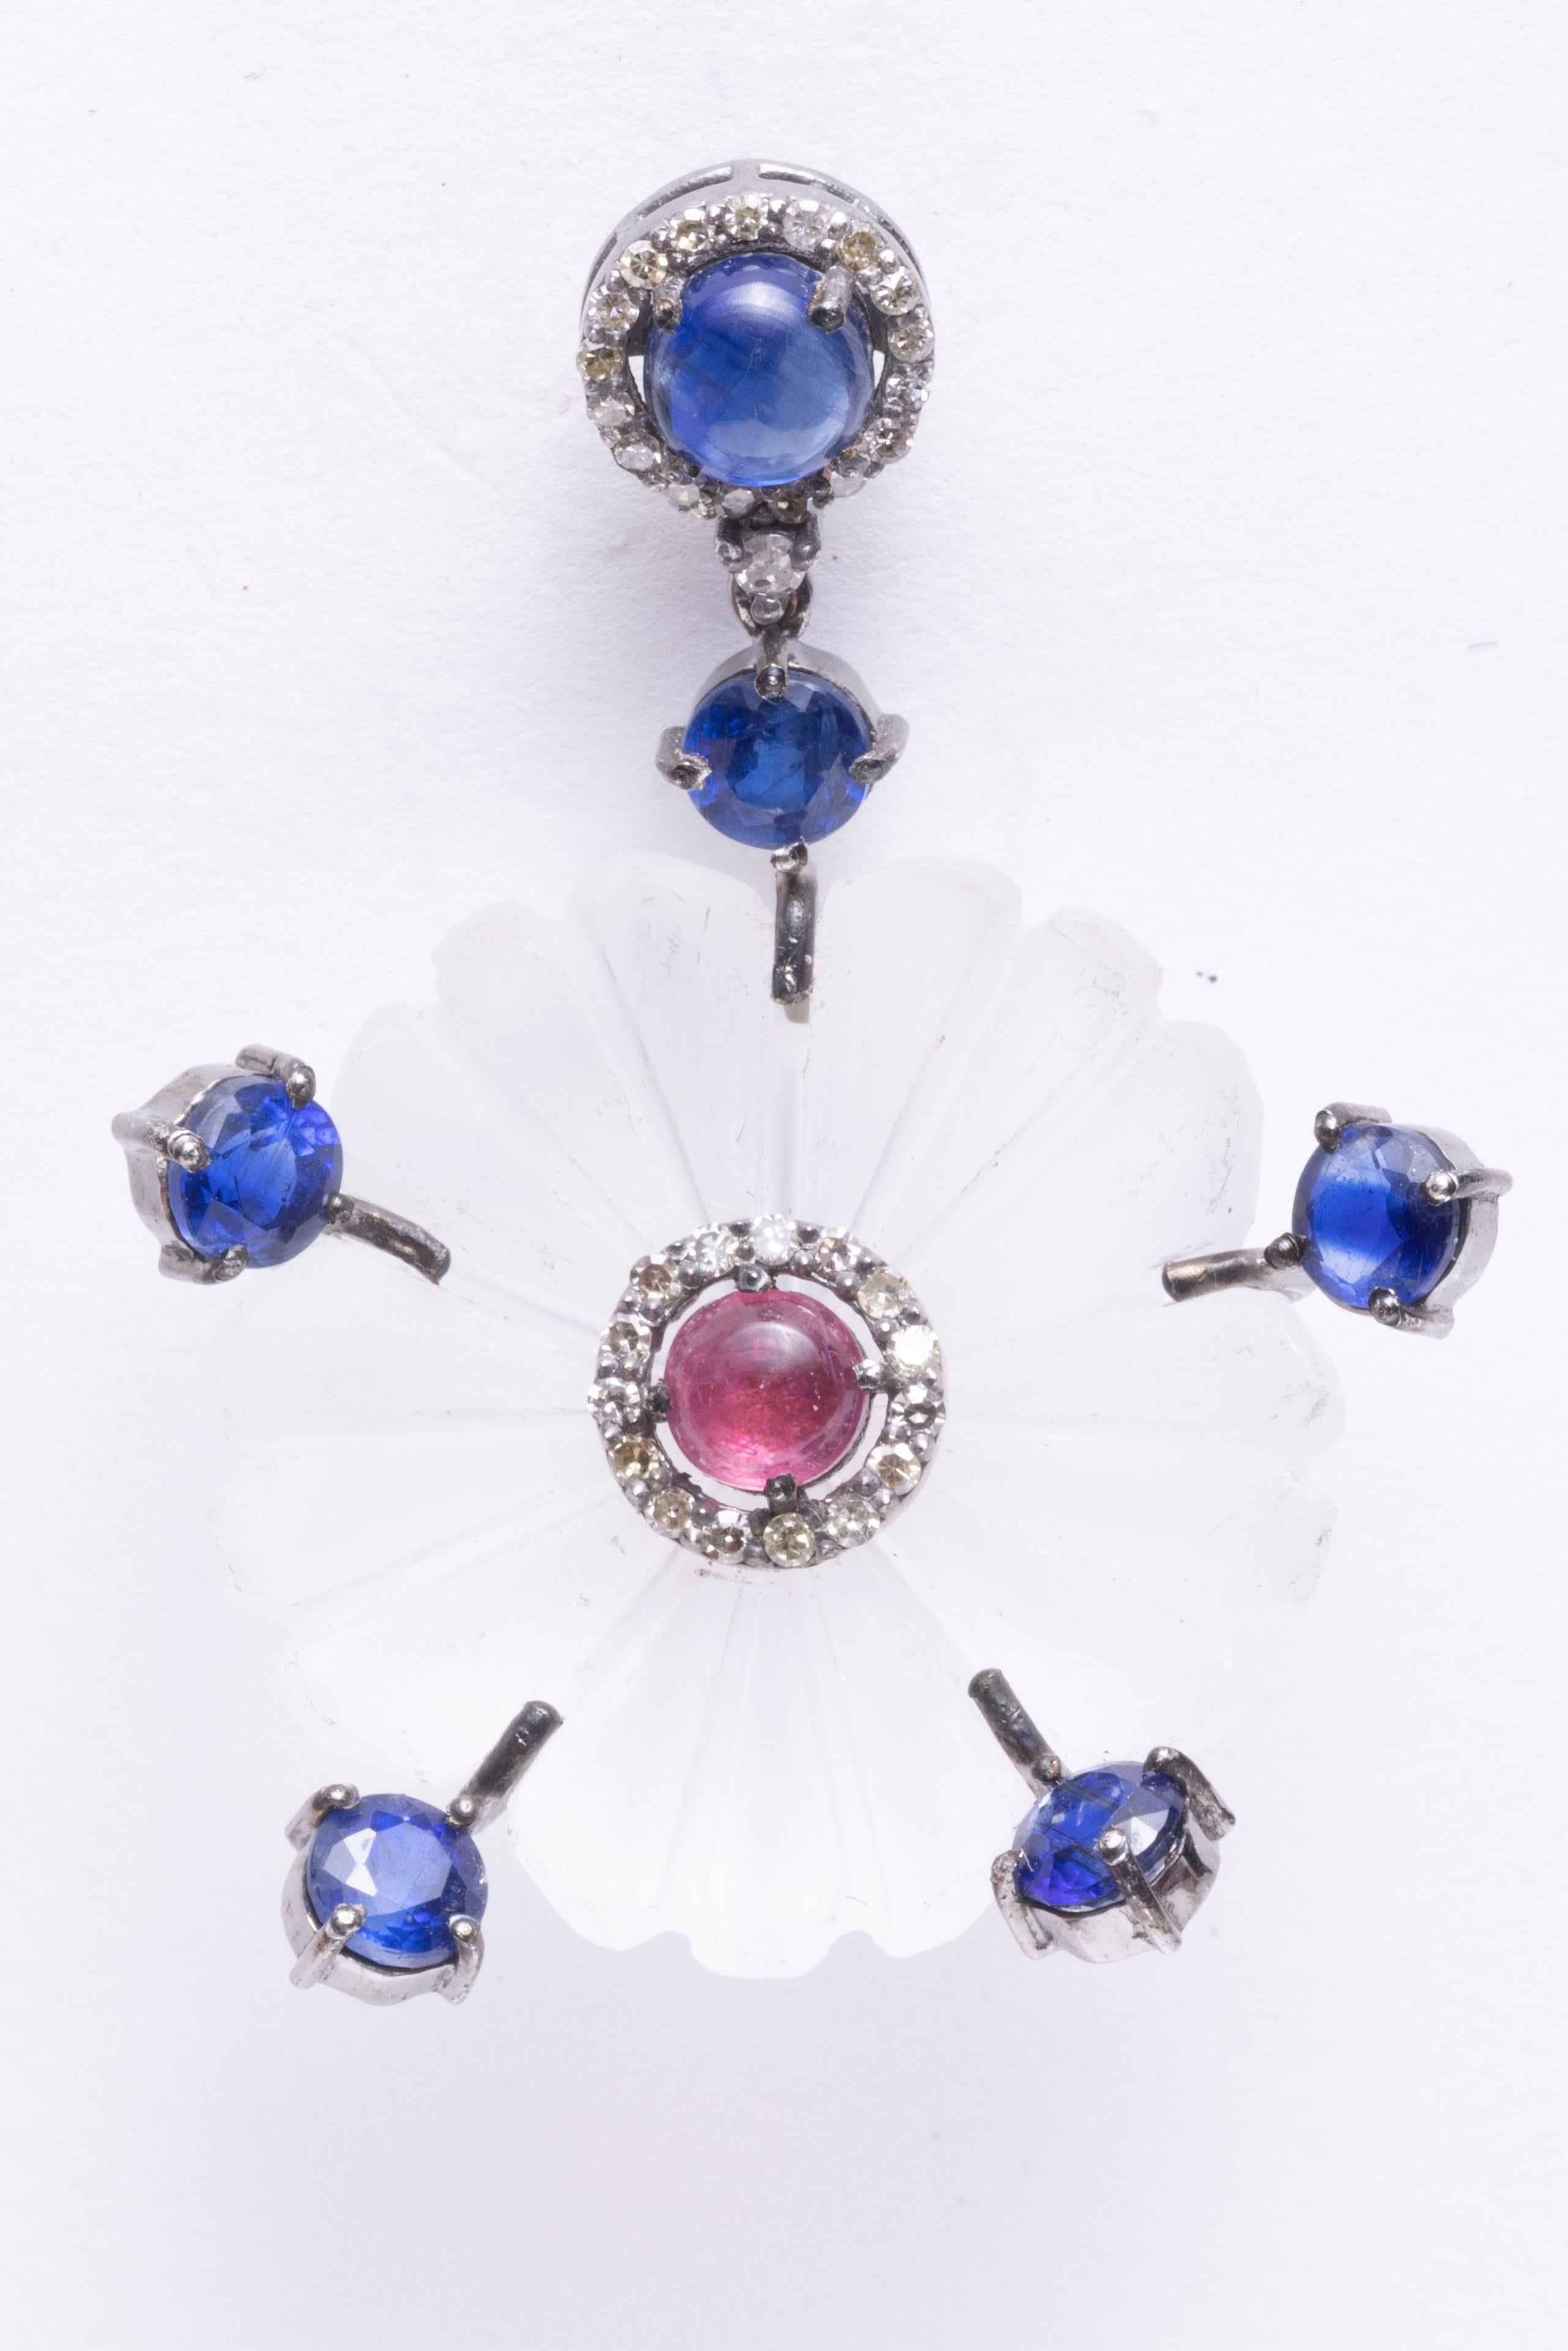 Ein ungewöhnliches Paar Ohrringe in geschnitztem Kristall mit floralem Motiv.  In der Mitte befindet sich ein Cabochon aus rosafarbenem Turmalin, eingefasst von runden, facettierten Diamanten.  Blaue Kyanitsteine strahlen zu den Rändern hin aus und